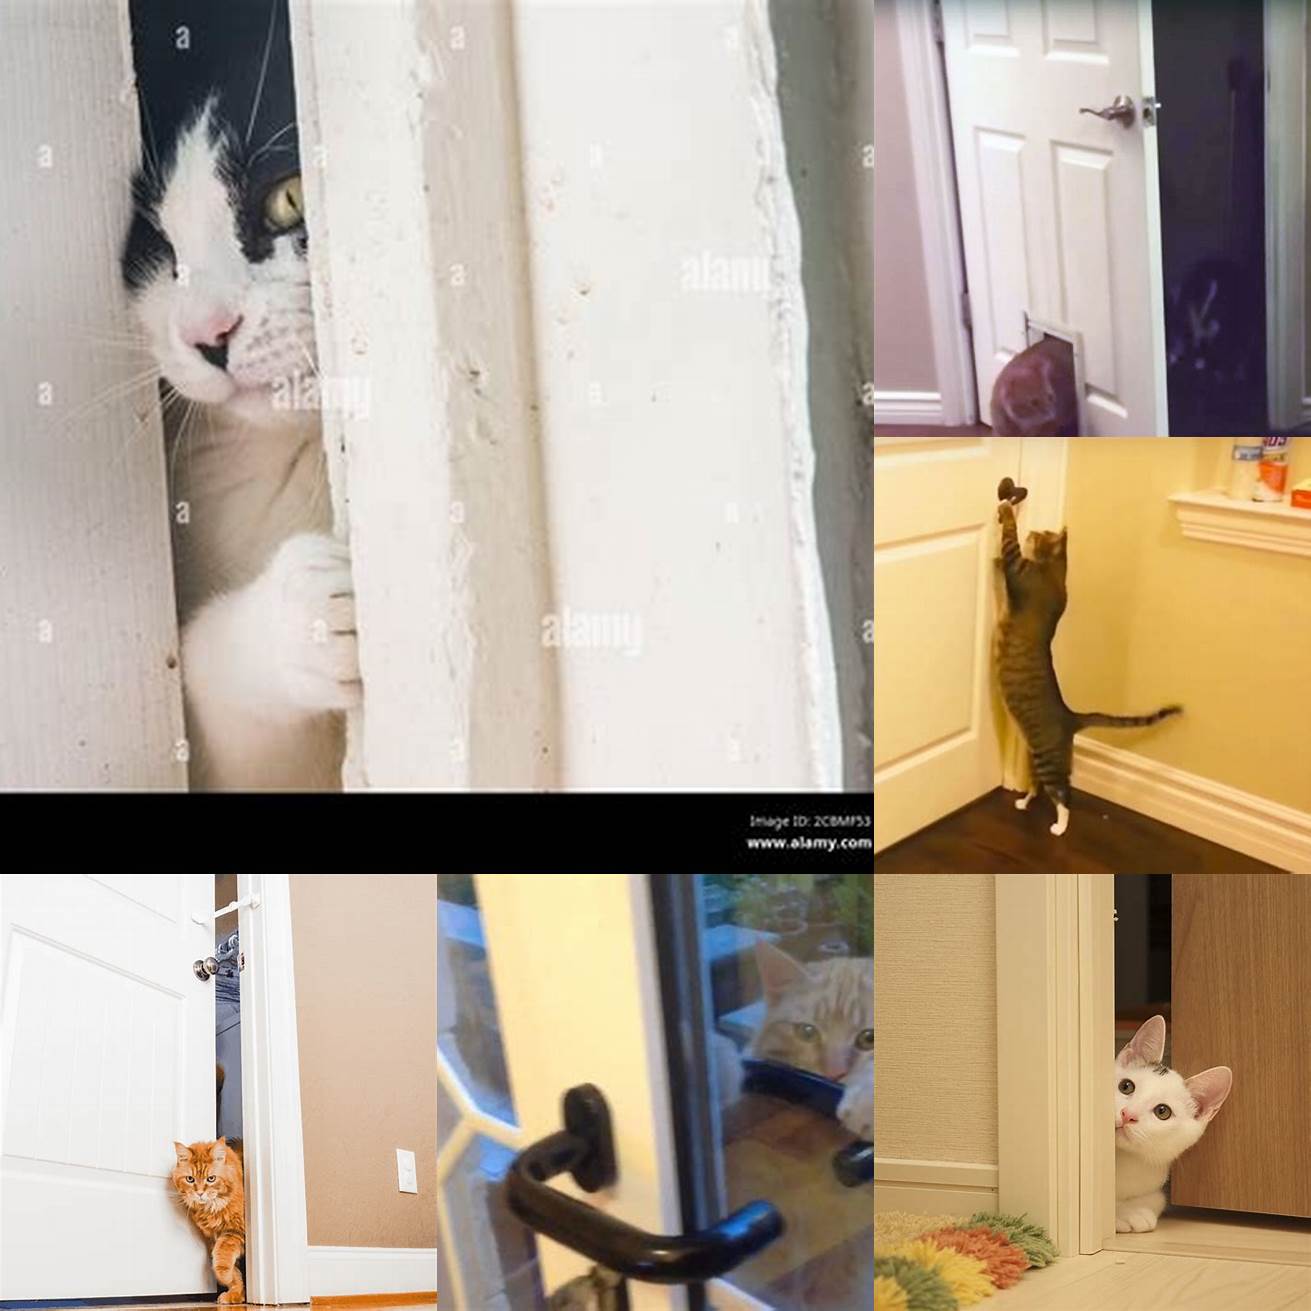 Cat exploring through open door